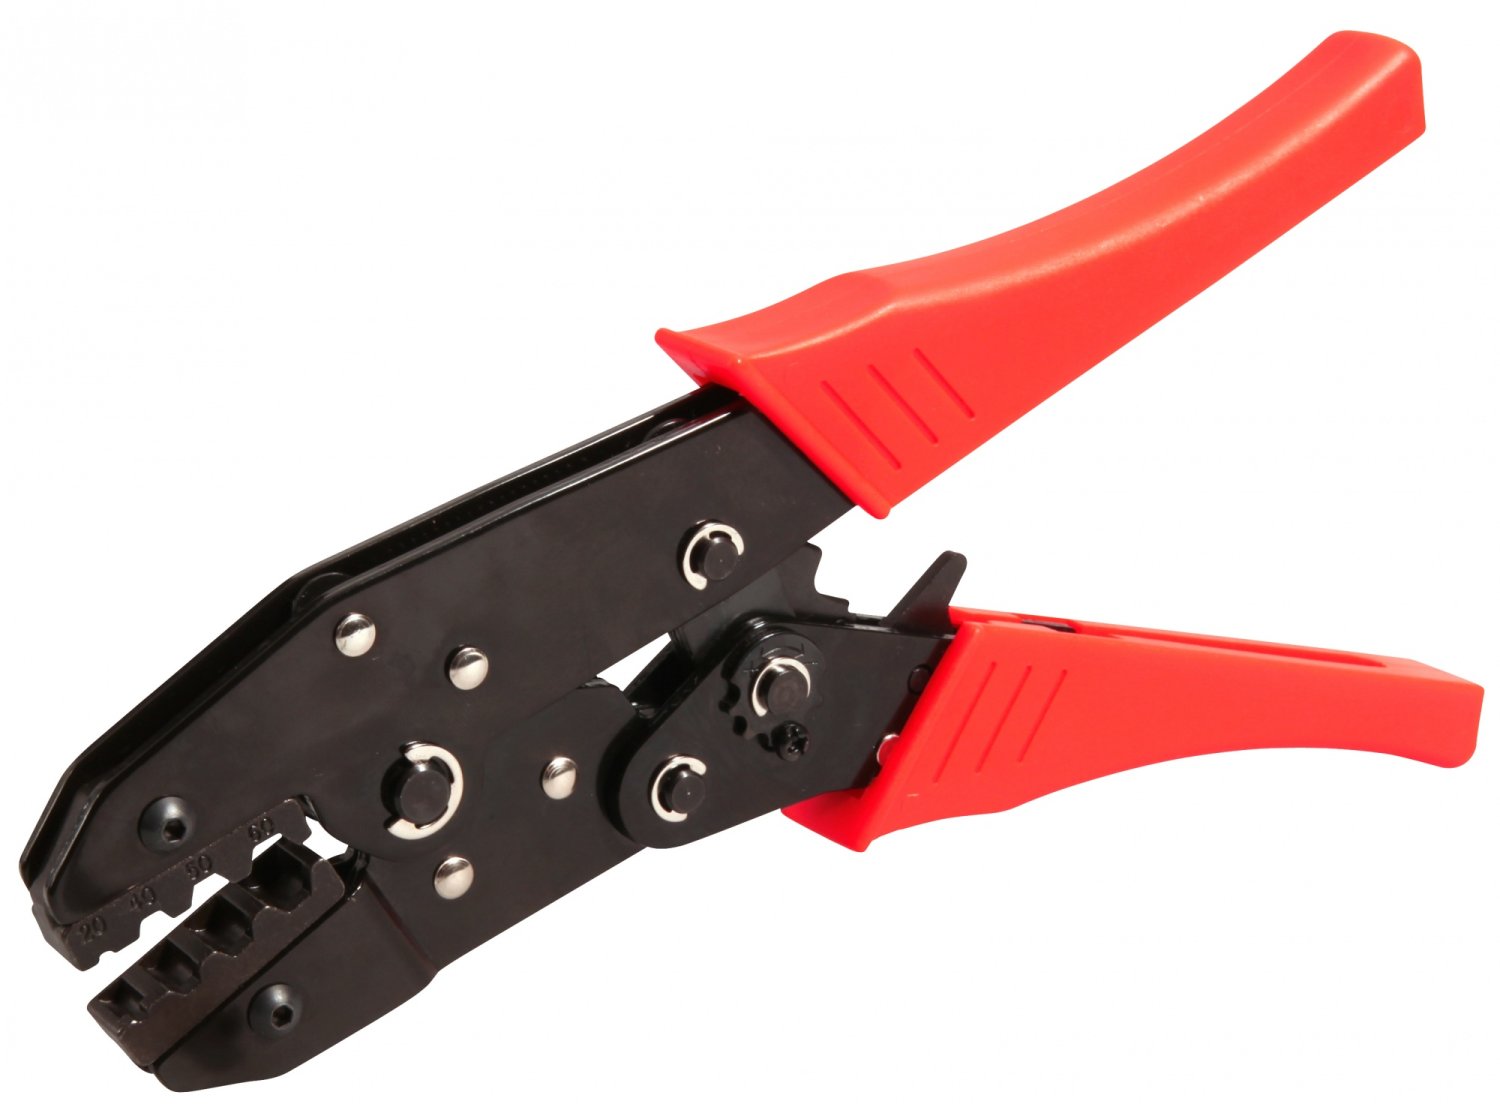 Инструмент многофункциональный ELVEDES для обжимания и троса и рубашки, красный/черный, 2009019 инструмент профессиональный elvedes для выравнивания троса cable pricker титан 2012029